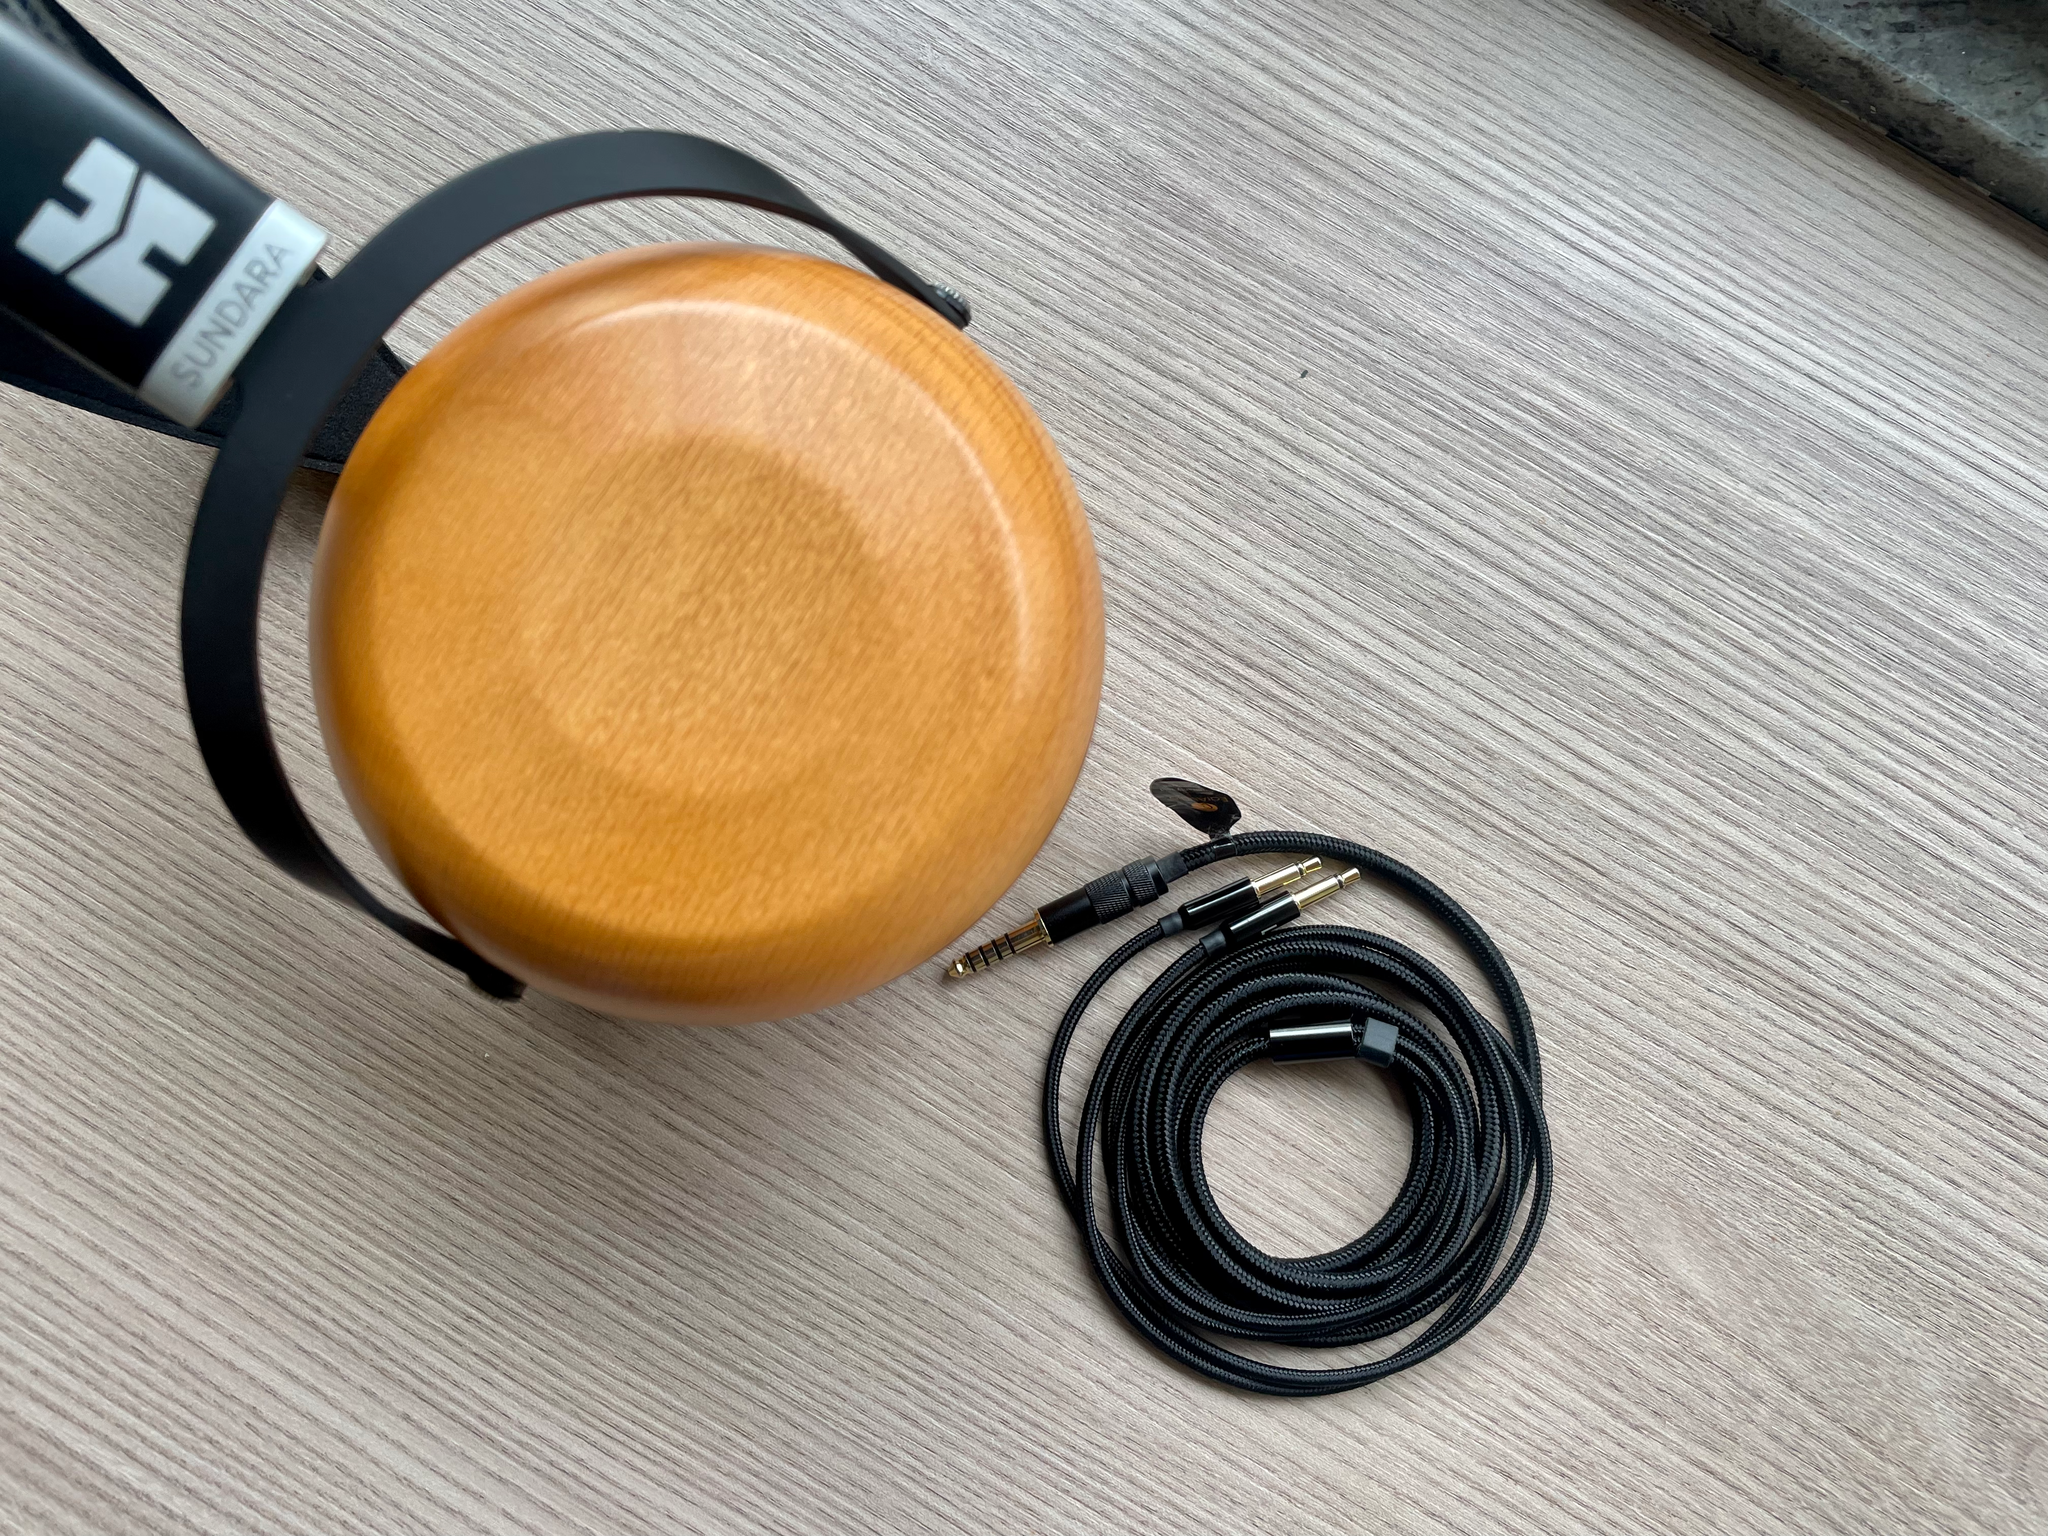 HiFiMAN Sundara Closed-Back Planar Magnetic Headphones Review